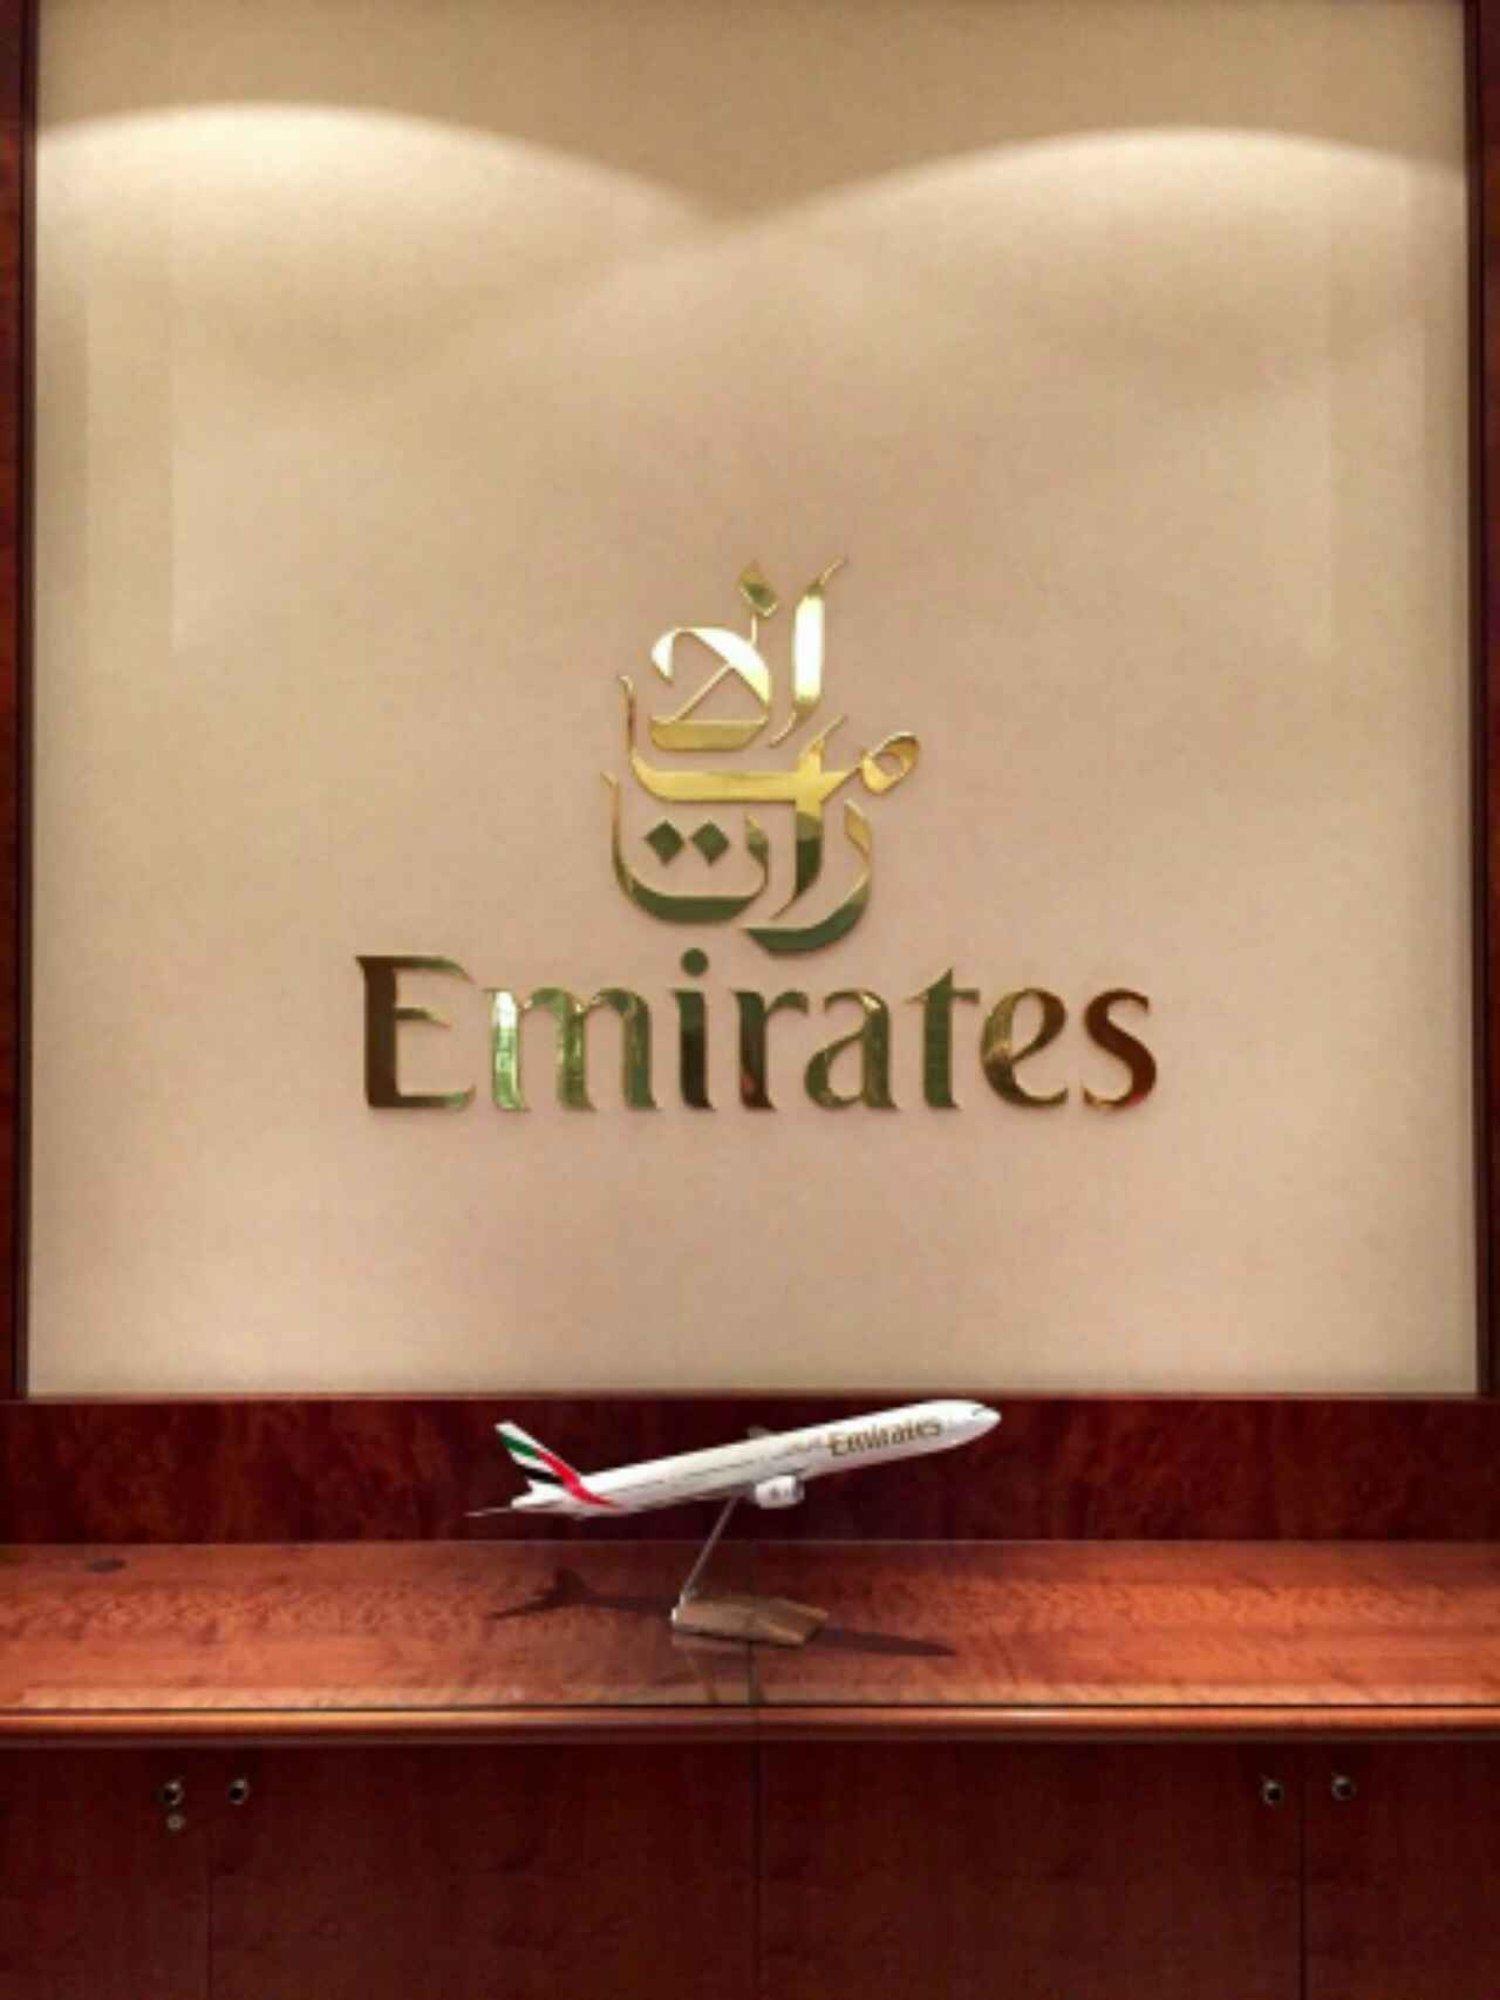 The Emirates Lounge image 5 of 8